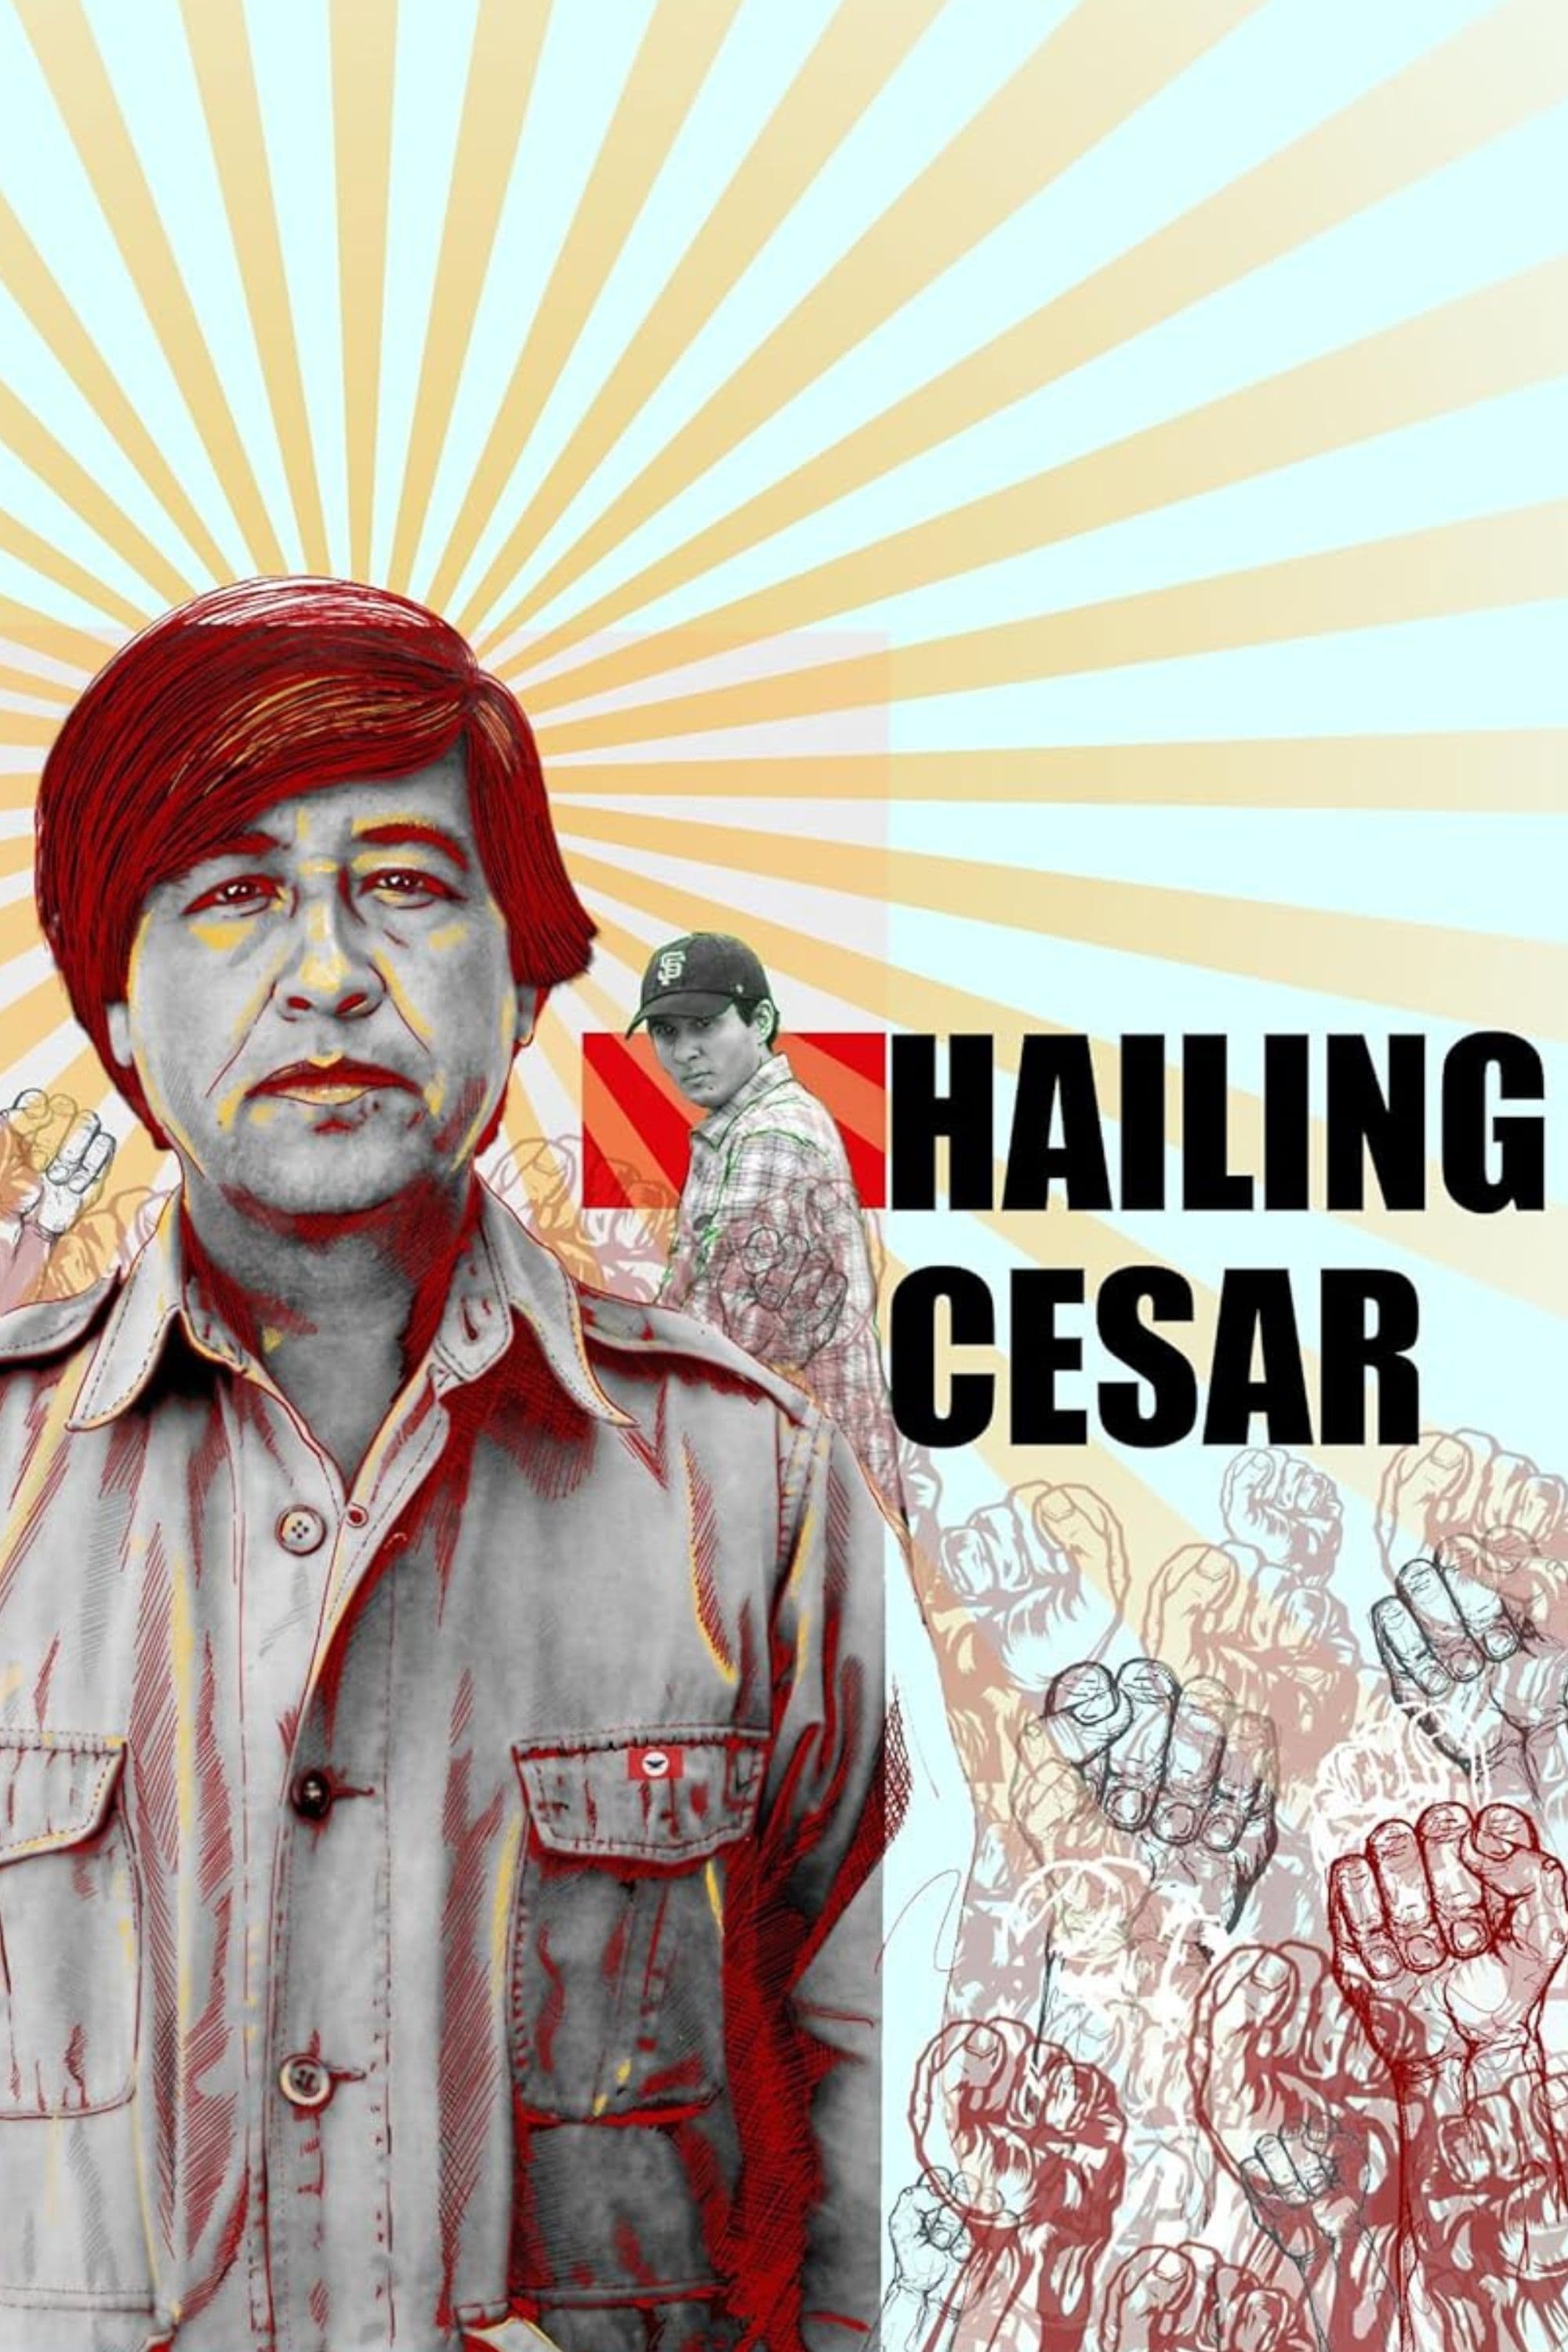 Hailing Cesar